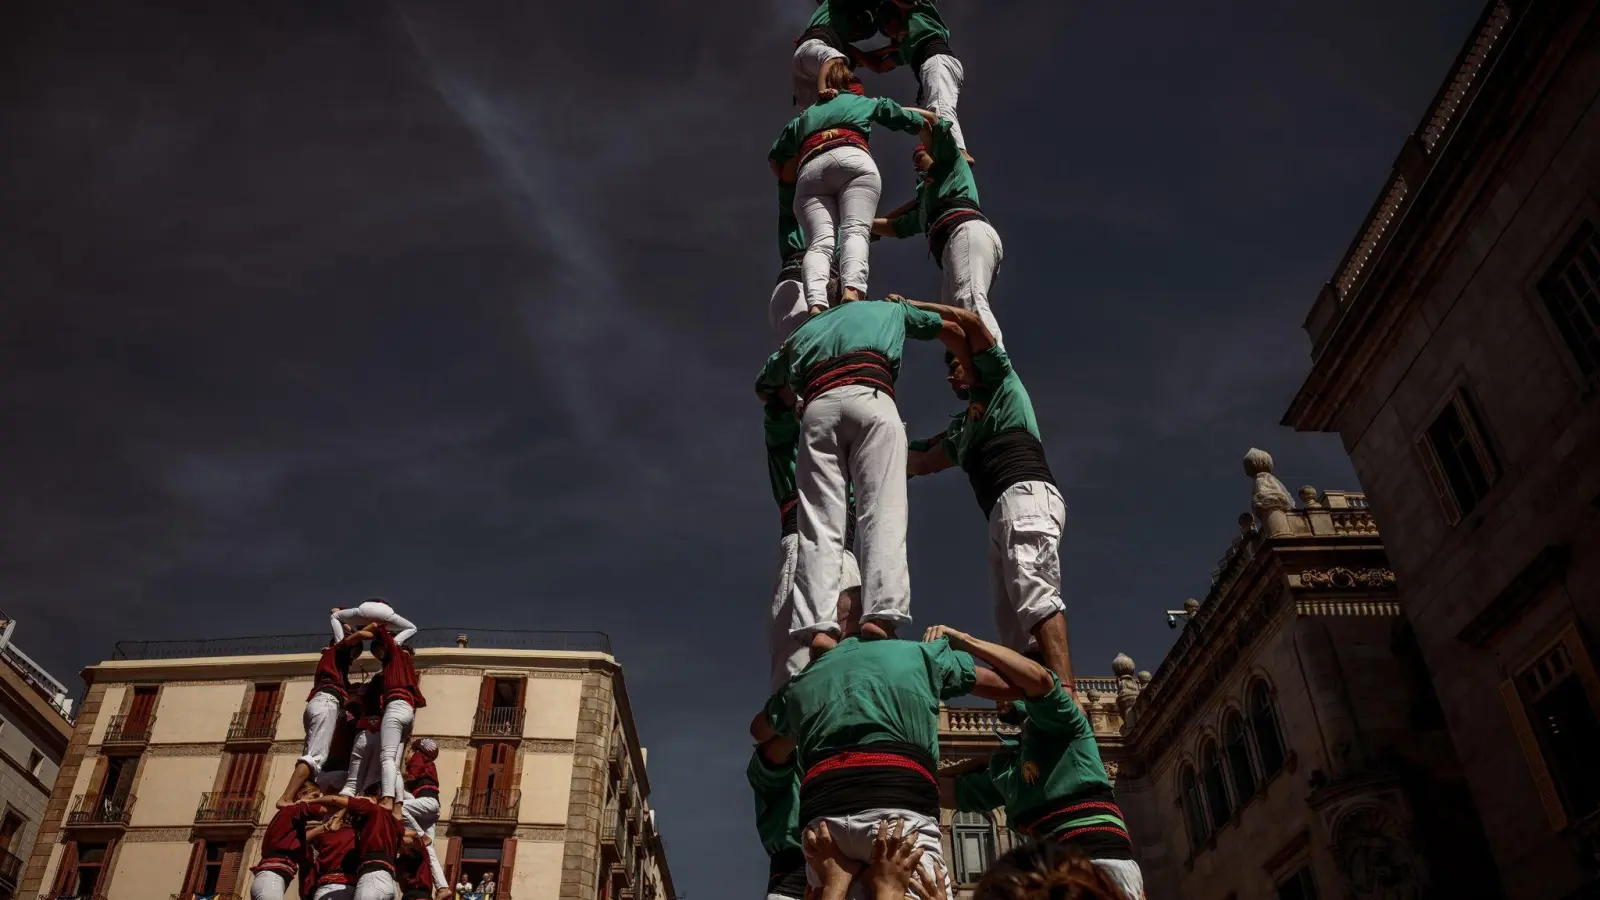 Beim Stadtfest in Barcelona überbieten sich die Akrobaten gegenseitig beim Bau menschlicher Pyramiden und Türme. (Foto: Matthias Oesterle/ZUMA Press Wire/dpa)